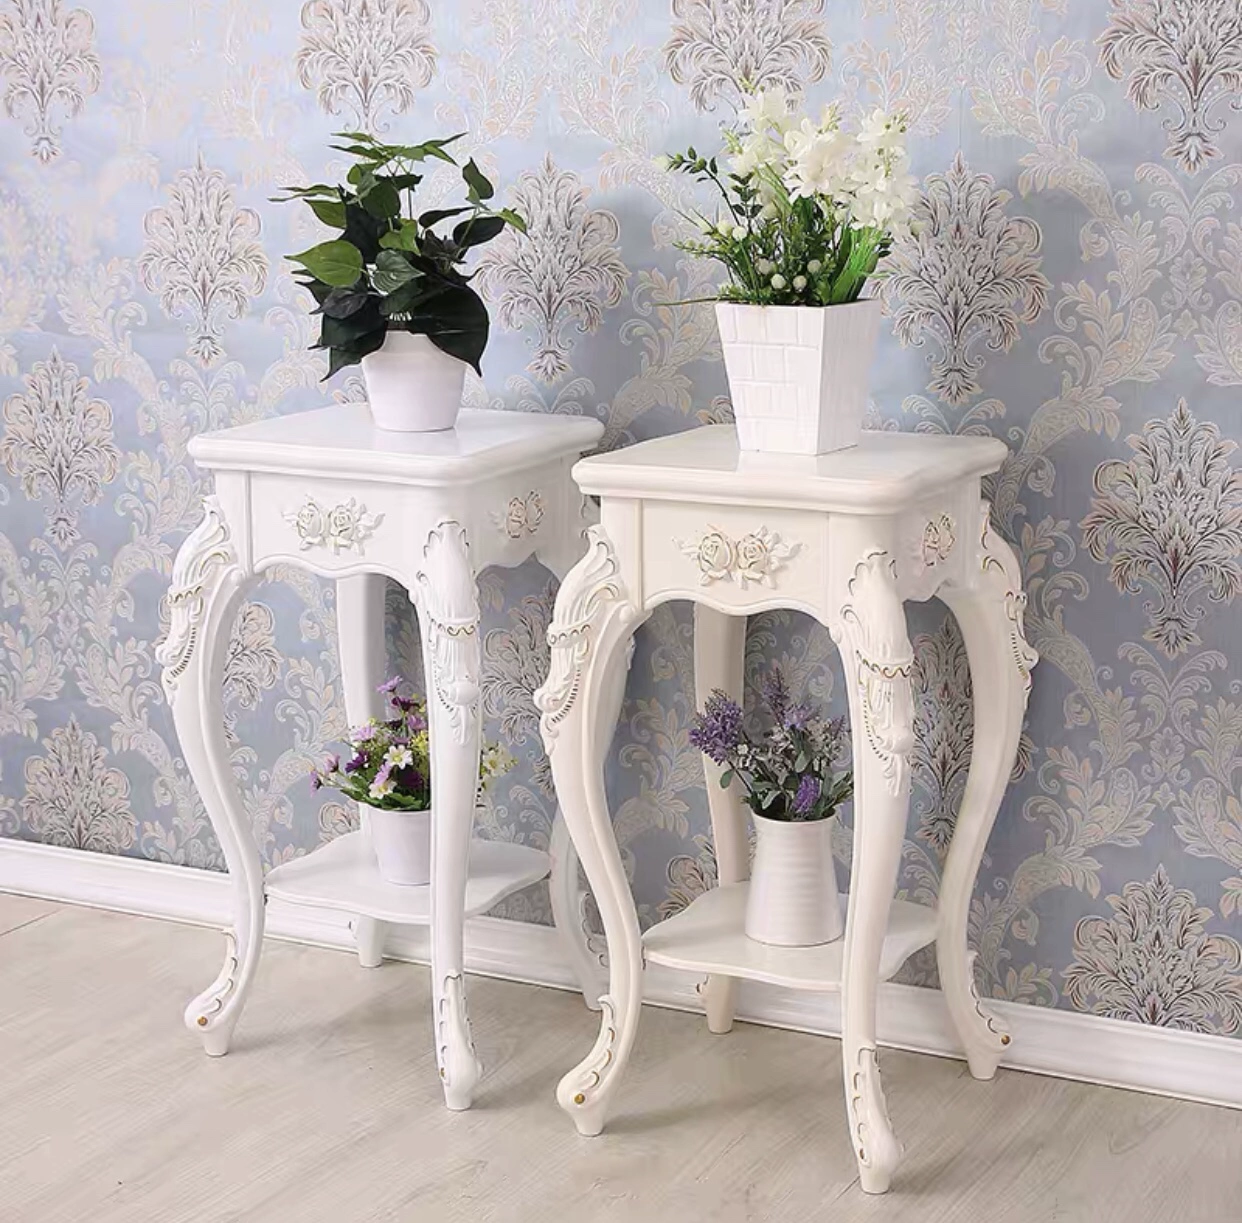 Giá 
            đỡ hoa theo phong cách châu Âu tùy chỉnh giả gỗ nguyên khối phòng khách màu trắng đơn giản hiện đại mục vụ hoa một vài thì là màu xanh lá cây giá đỡ chậu hoa giá đỡ nhiều tầng kệ cây cảnh ban công kệ để chậu hoa ban công 